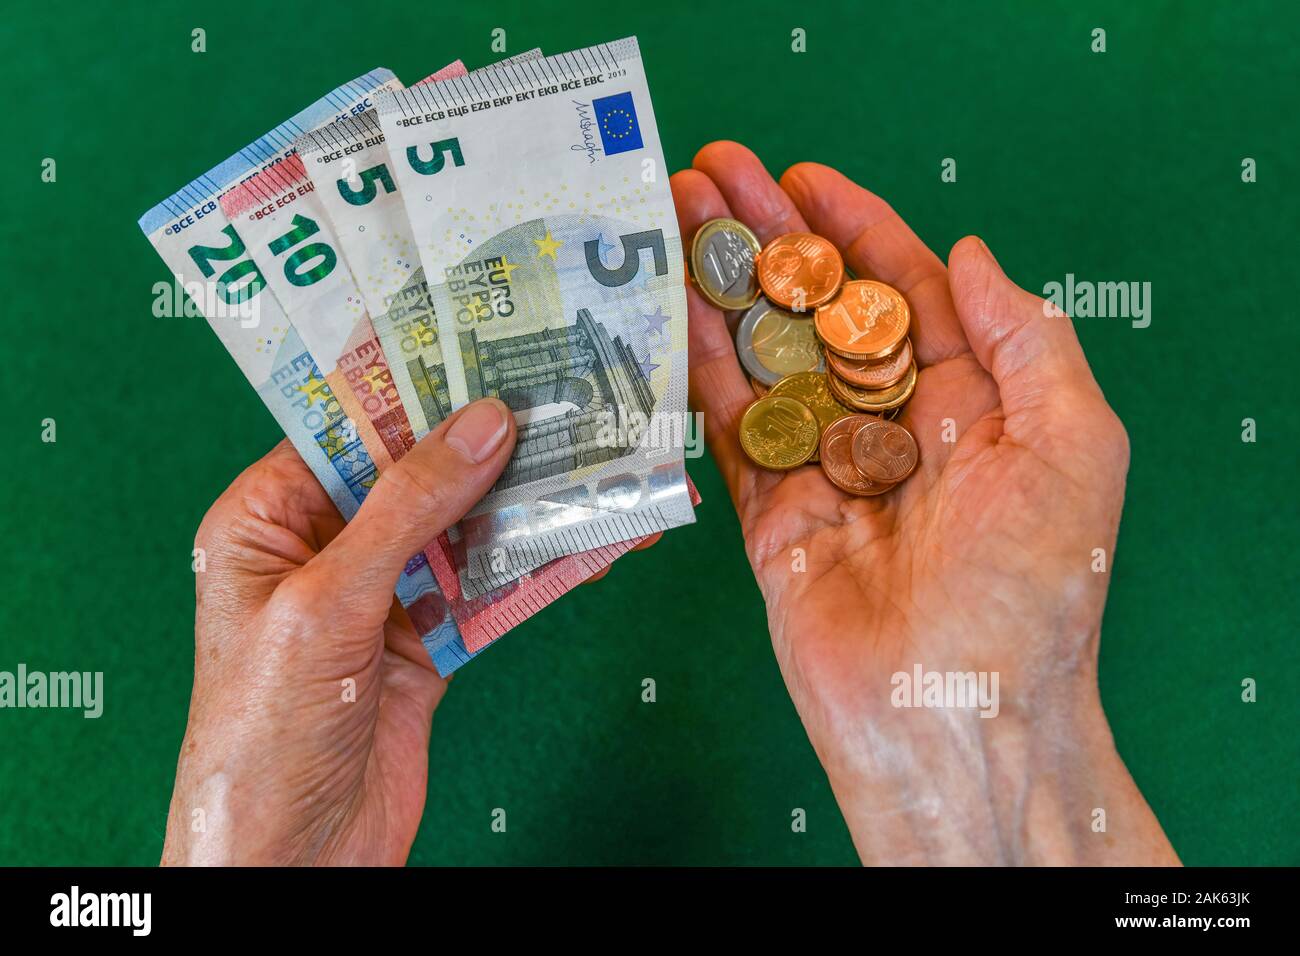 Photo symbole de la vieillesse, les mains d'une vieille femme, pensionné, avec de l'argent, Allemagne Banque D'Images